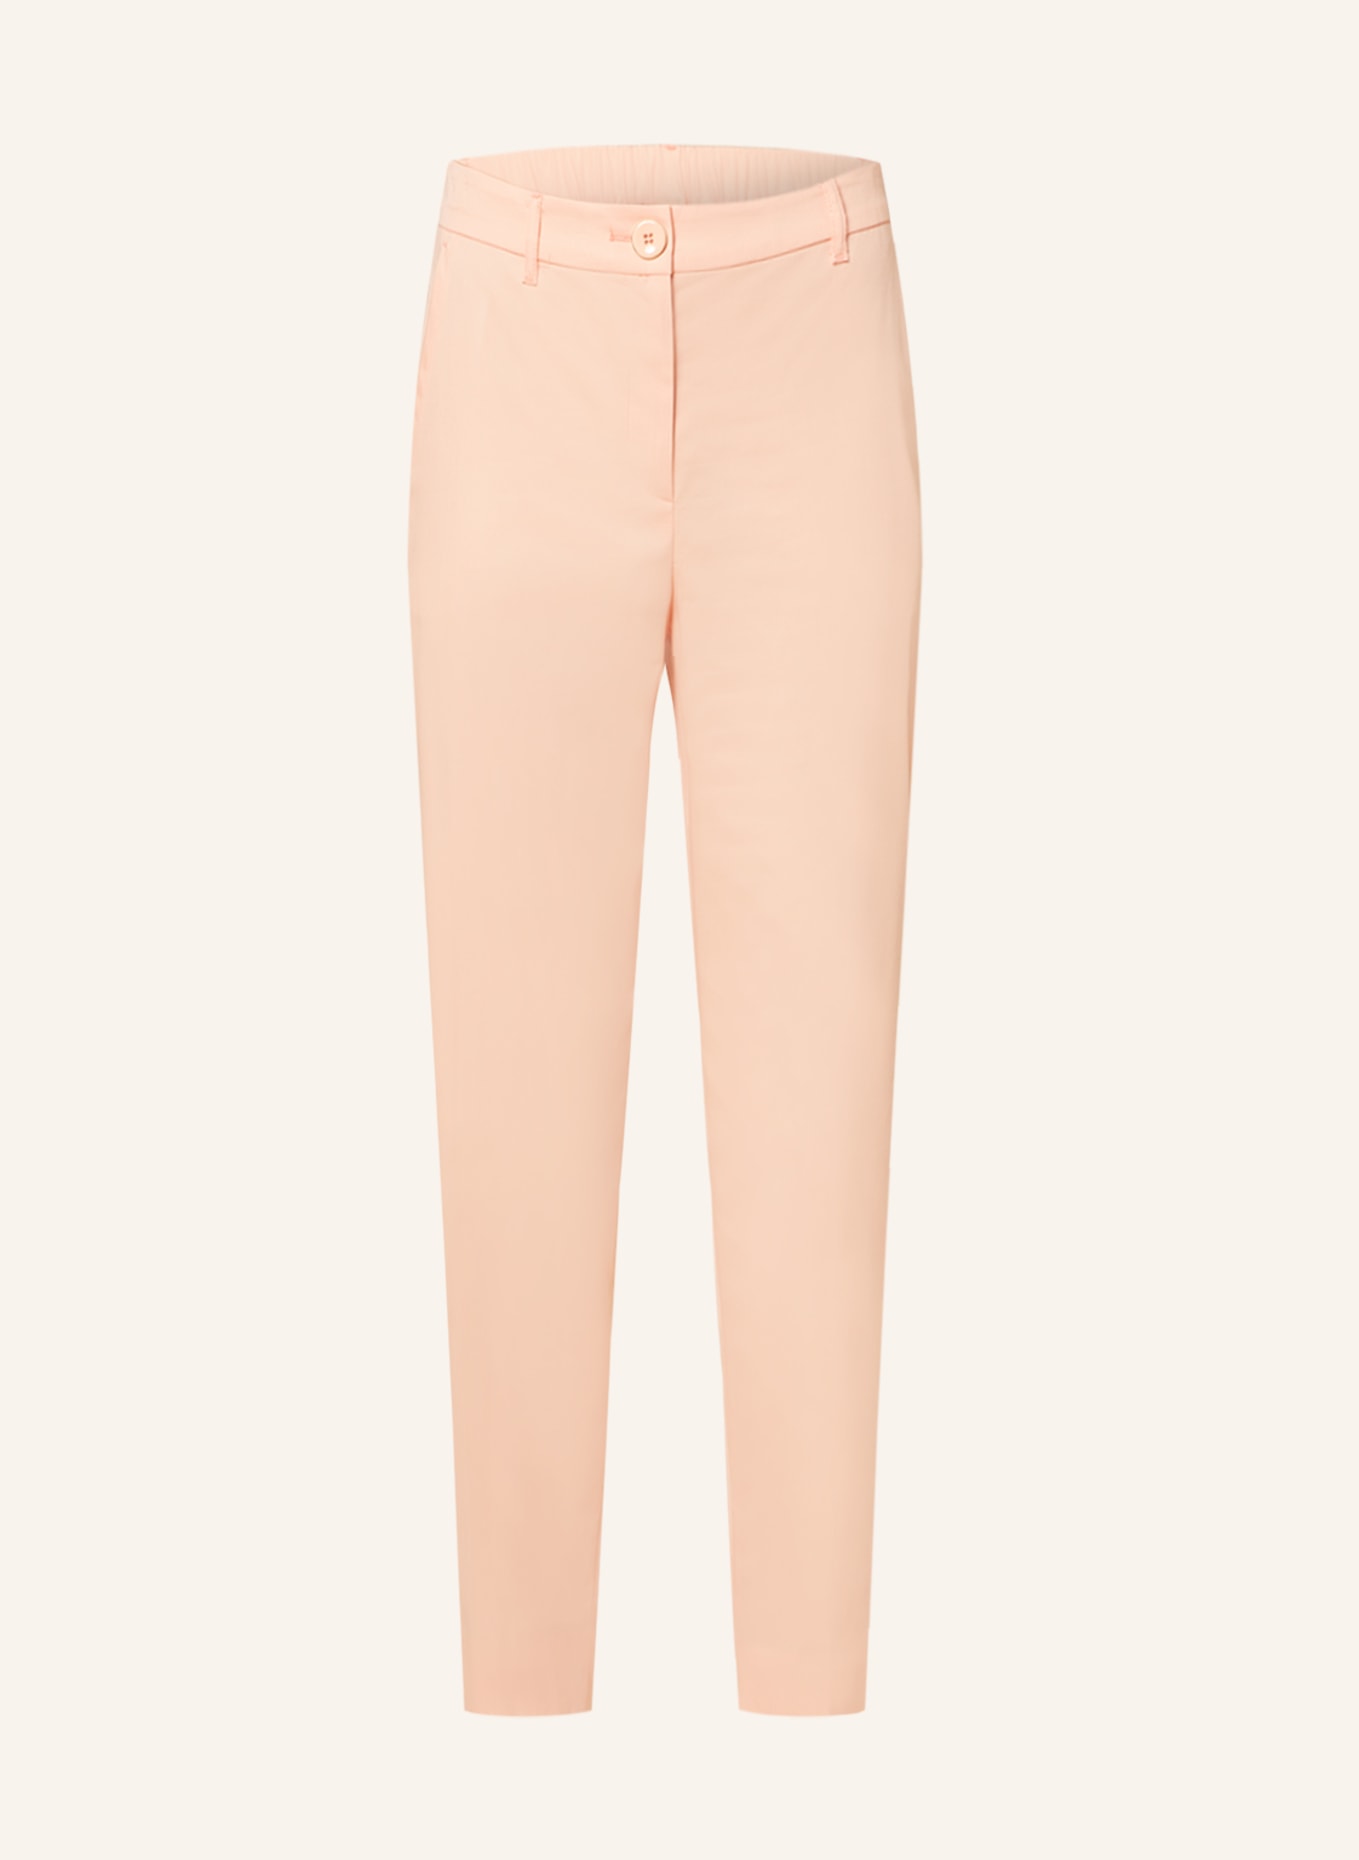 MARC CAIN 7/8 pants, Color: 462 deep peach (Image 1)